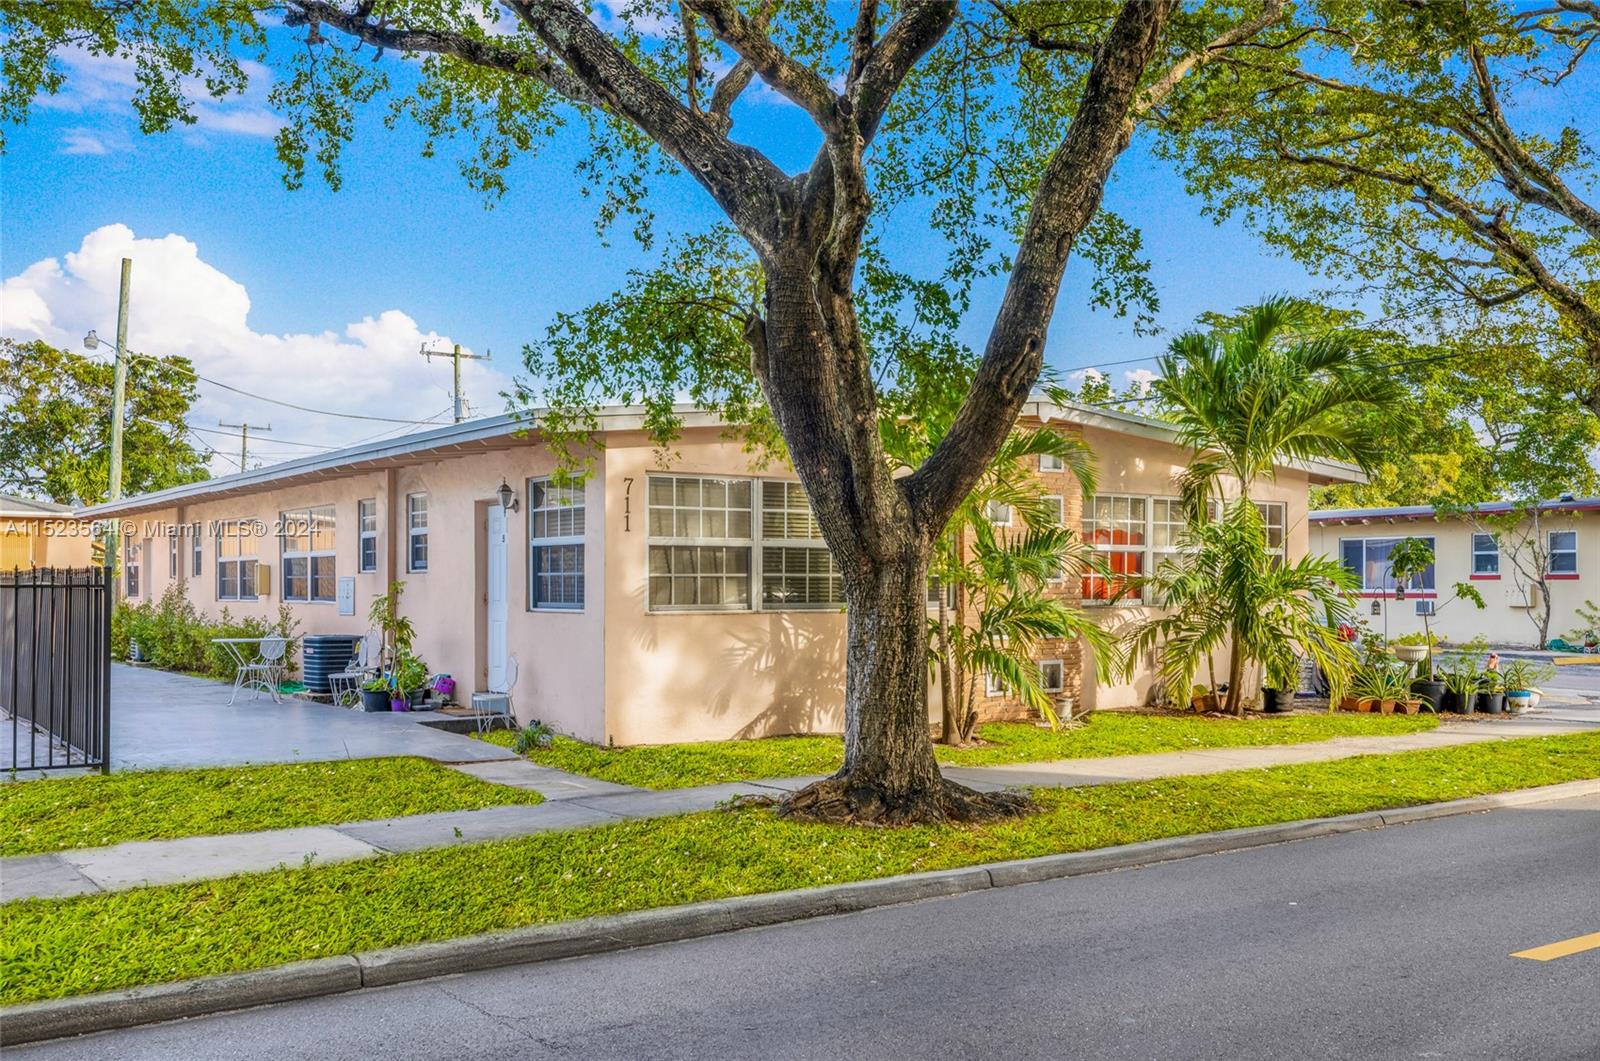 Rental Property at 711 S 20th Ave, Hollywood, Broward County, Florida -  - $925,000 MO.